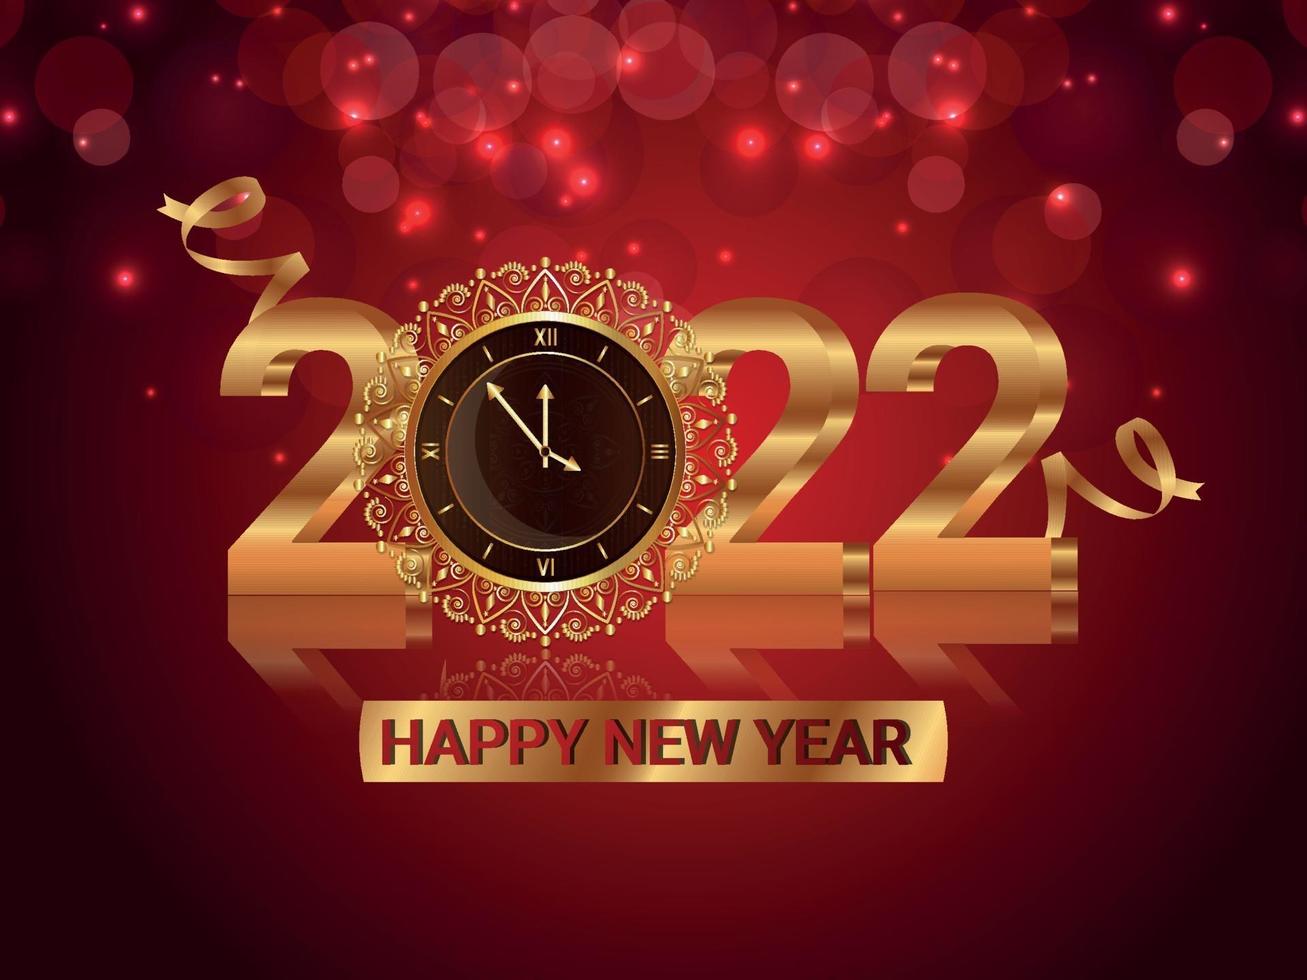 Vektorillustration des goldenen Textes des glücklichen neuen Jahres 2022 mit goldener Wanduhr vektor